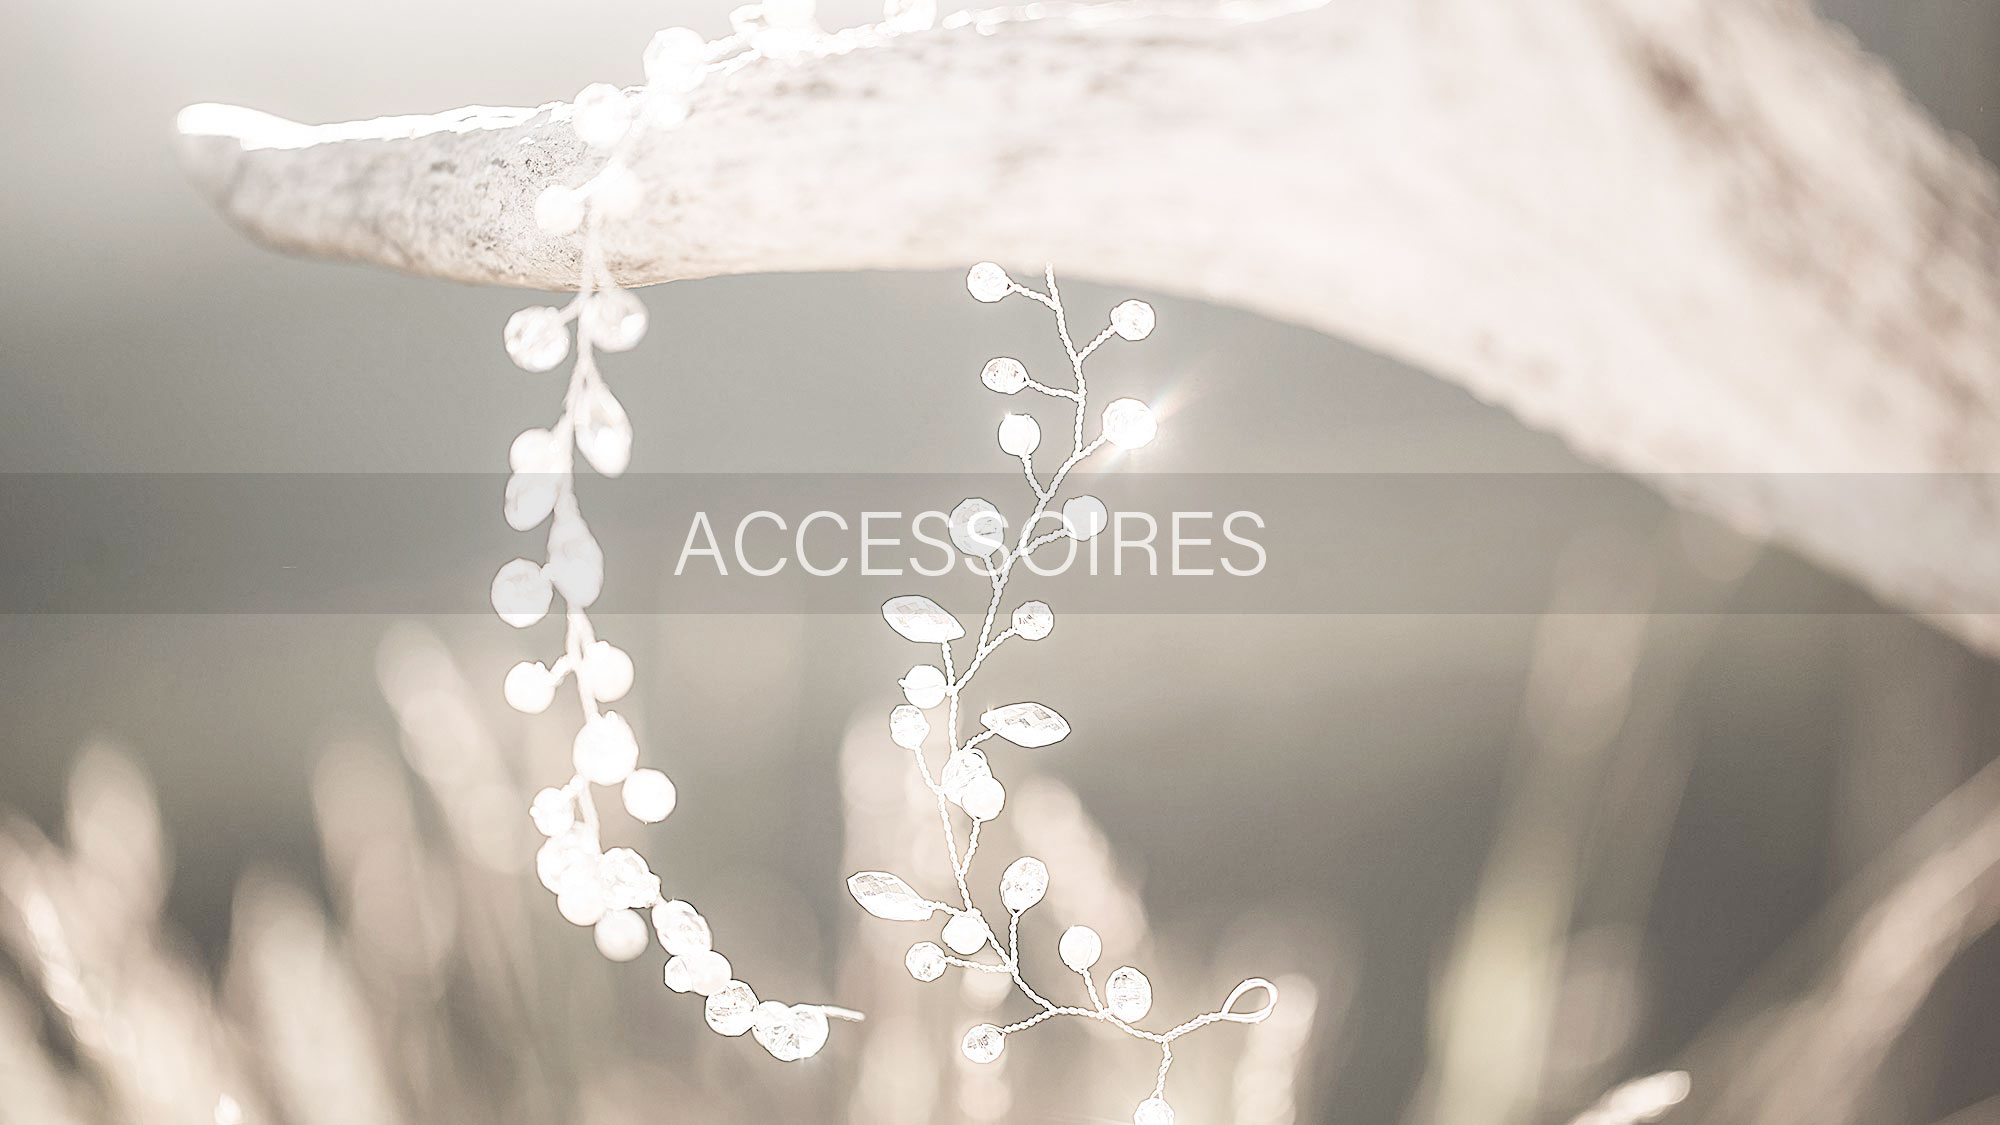 Brautmoden Accessoires für die suchende Braut in Backnang und Umgebung. Brautschuhe für Ihren Hochzeitstag passend zum Brautkleid. Entdecken Sie die große Vielfalt unserer Brautmoden Accessoires in unserem Geschäft in Backnang.